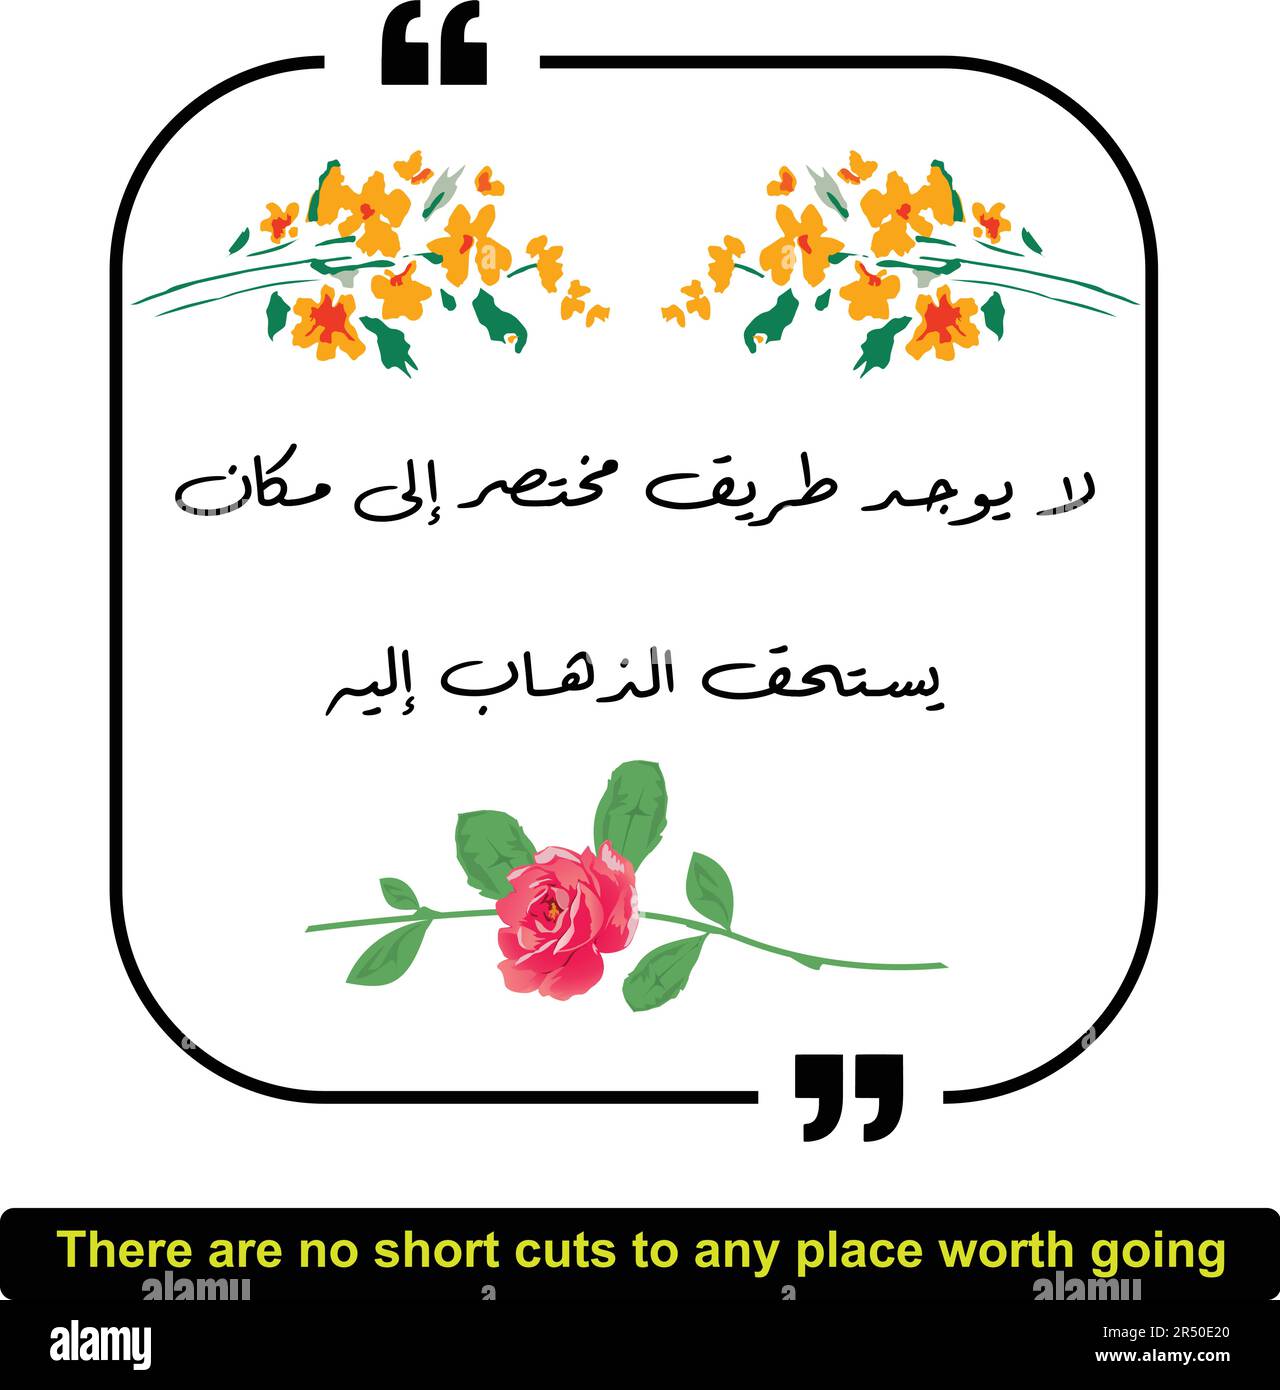 Arabisches Zitat bedeutet, es gibt keine Abkürzungen zu irgendeinem Ort, der es wert ist. Arabische Zitate mit englischer Übersetzung, motivierende Zitate, inspirierendes Zitat Stock Vektor